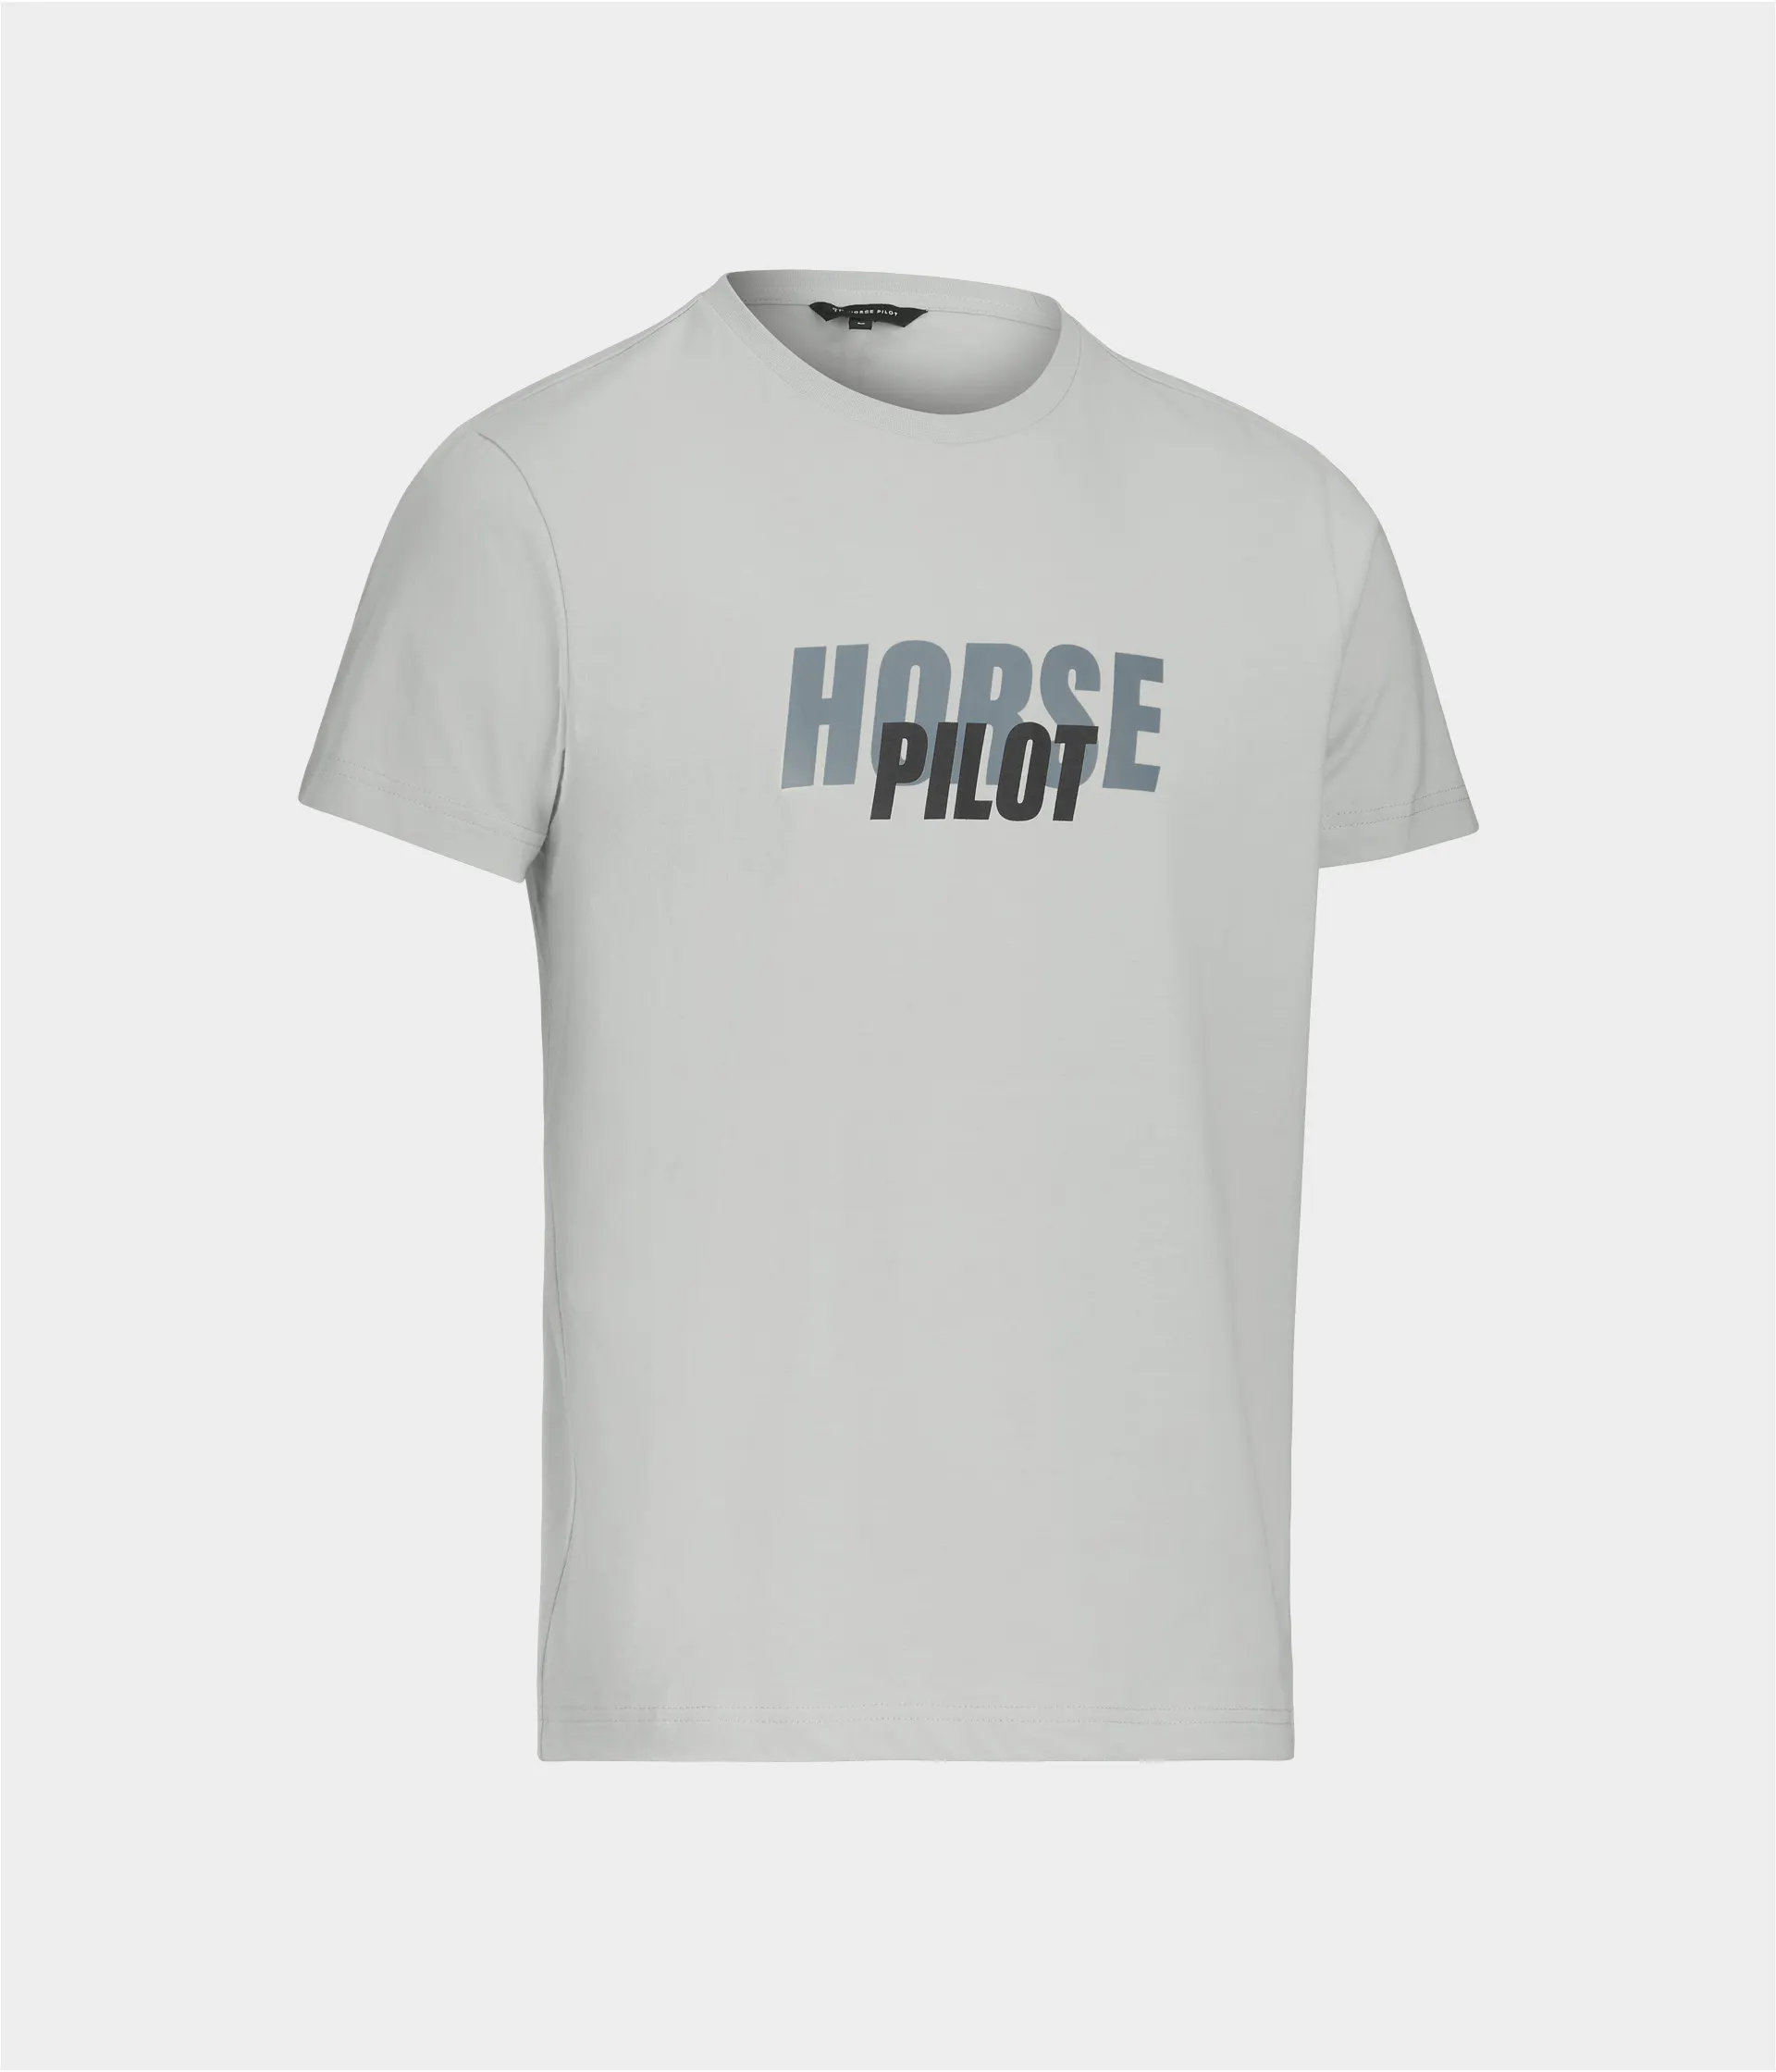 tee-shirt-horse-pilot-homme-gris